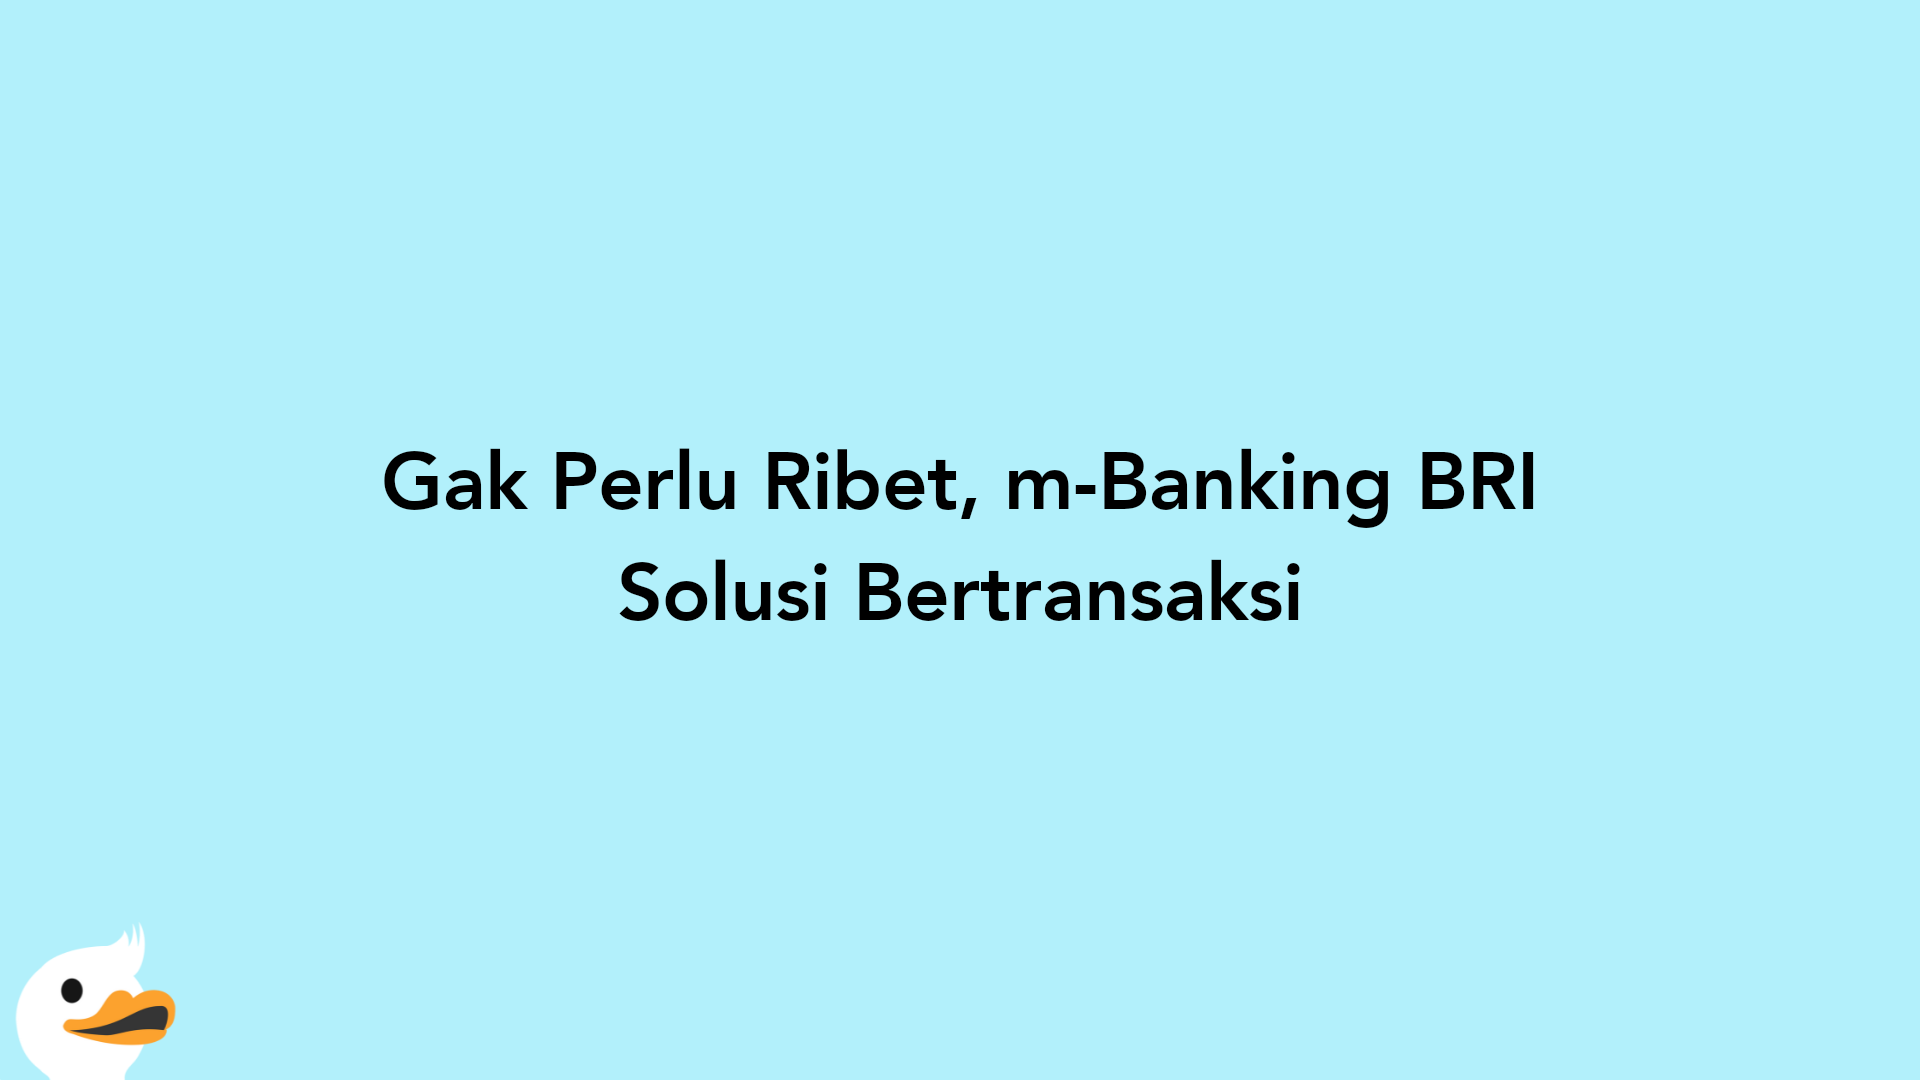 Gak Perlu Ribet, m-Banking BRI Solusi Bertransaksi